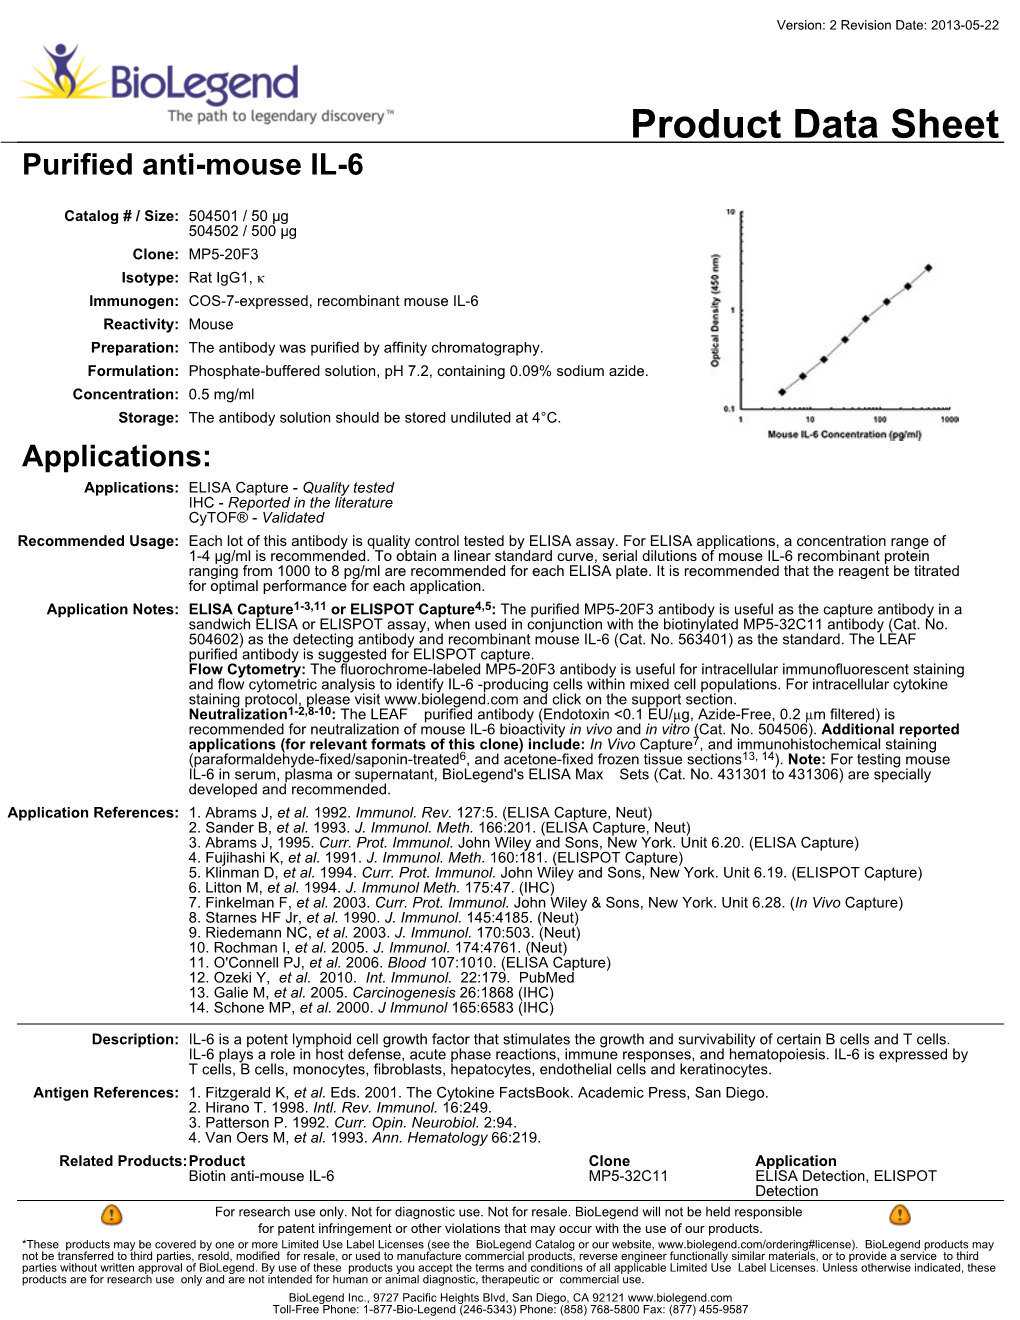 Product Data Sheet Purified Anti-Mouse IL-6